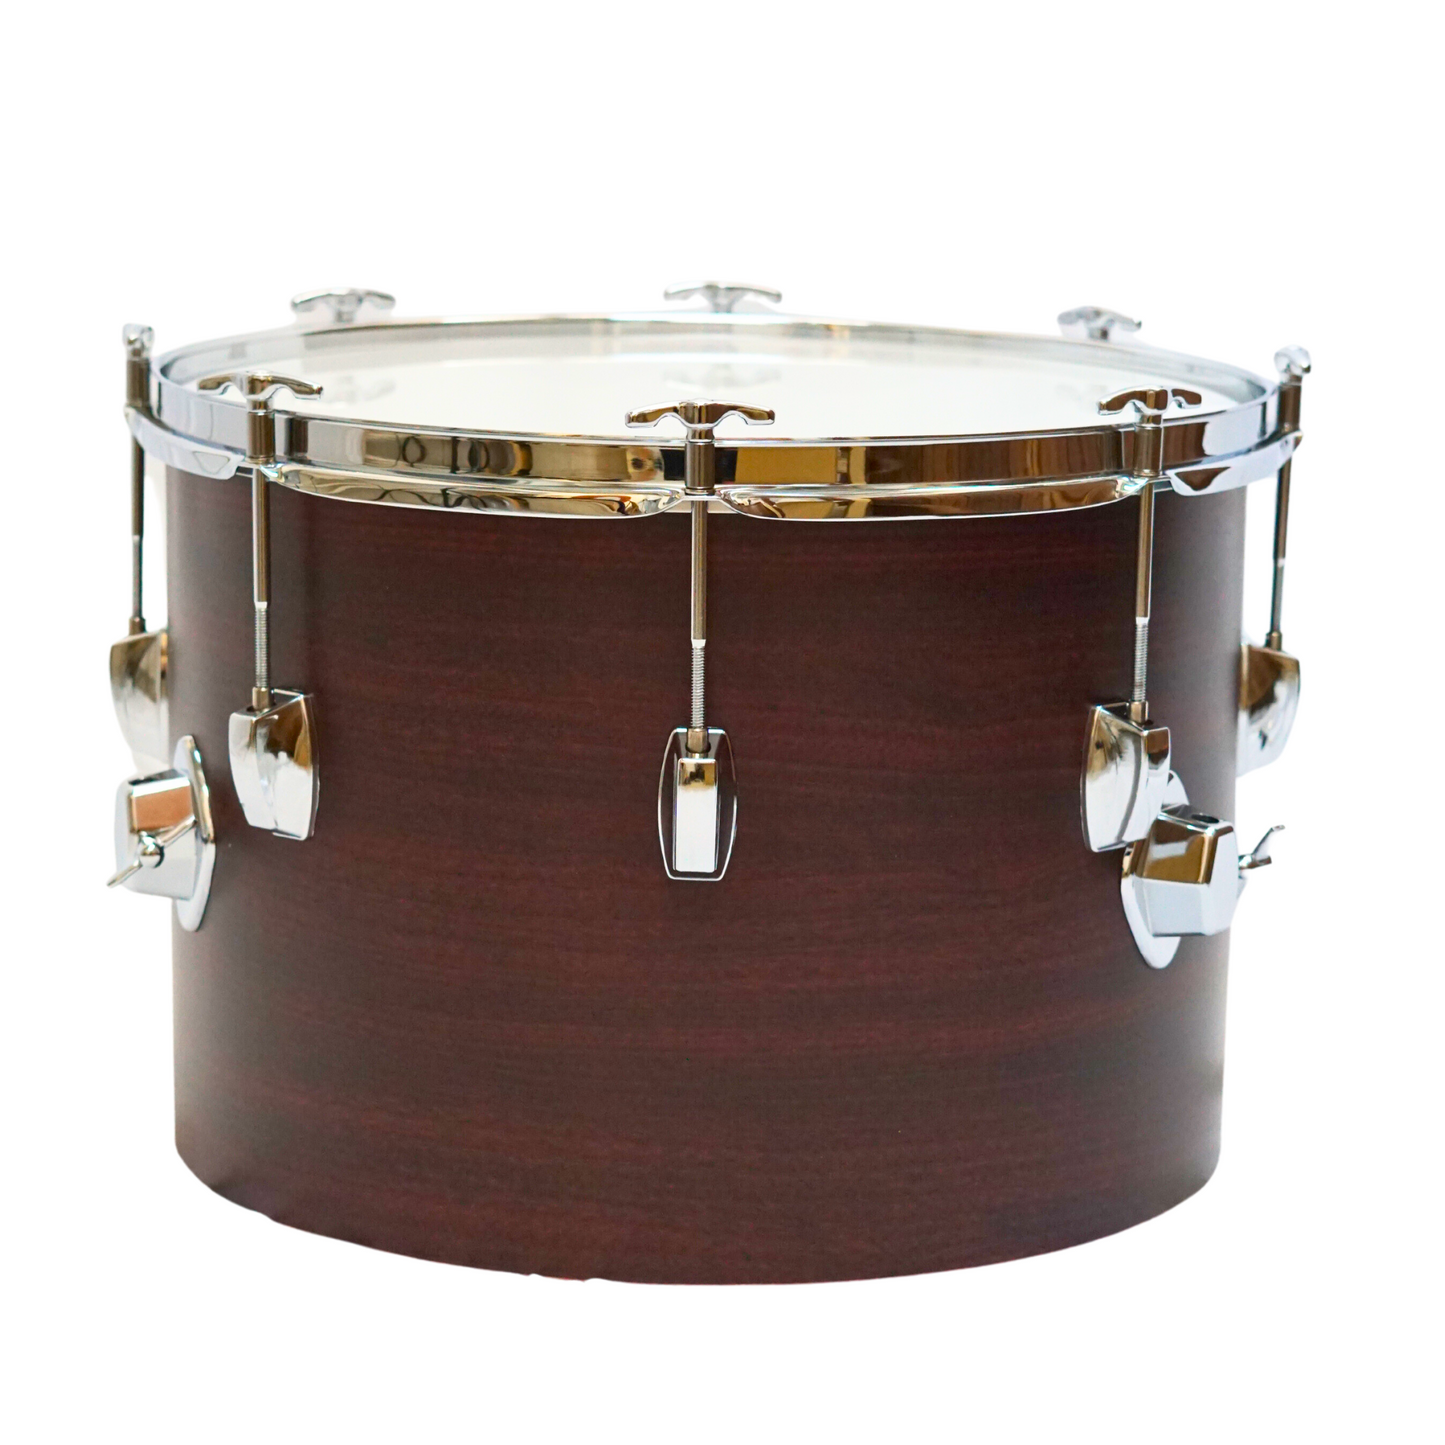 EMUS Timpani Drum, 3 Sizes 12", 14", 16"